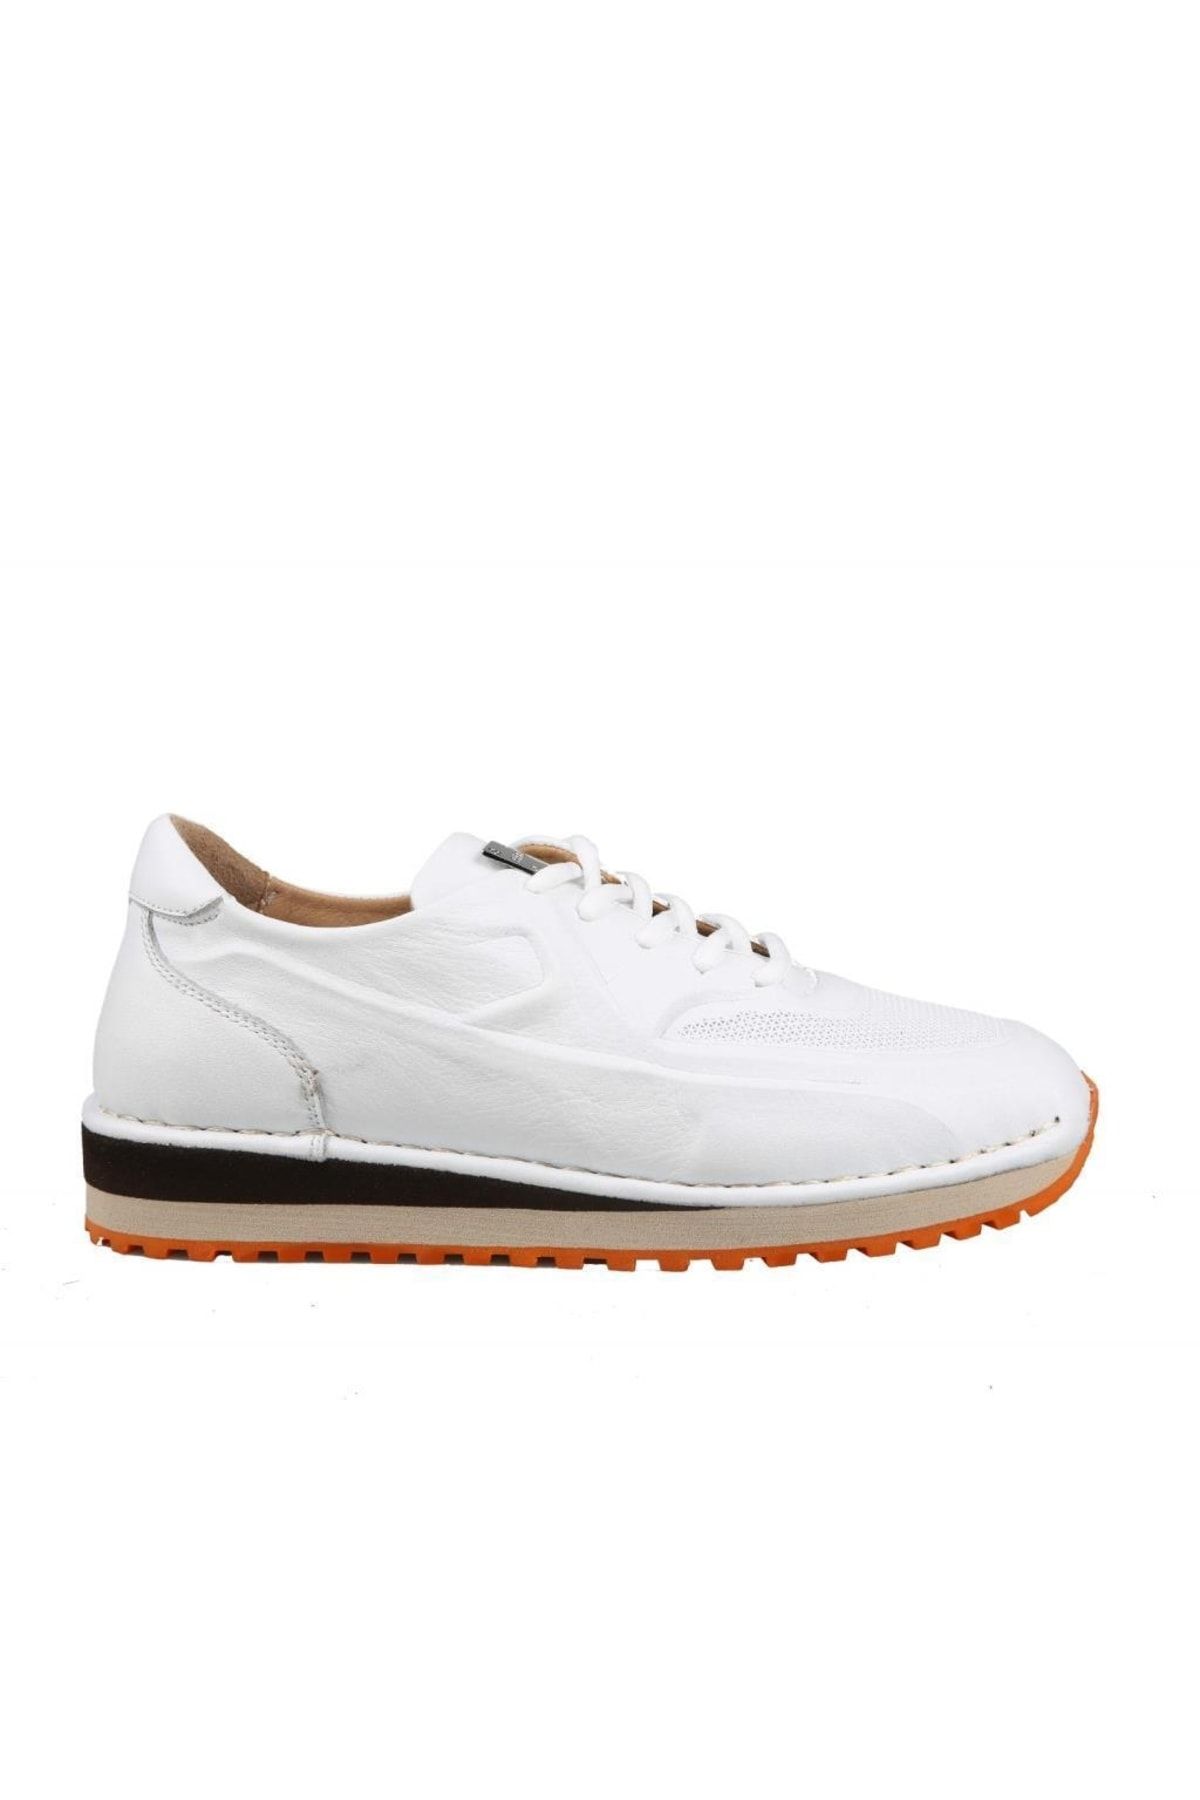 Pierre Cardin 80700 Hakiki Deri Beyaz Erkek Günlük Ayakkabı